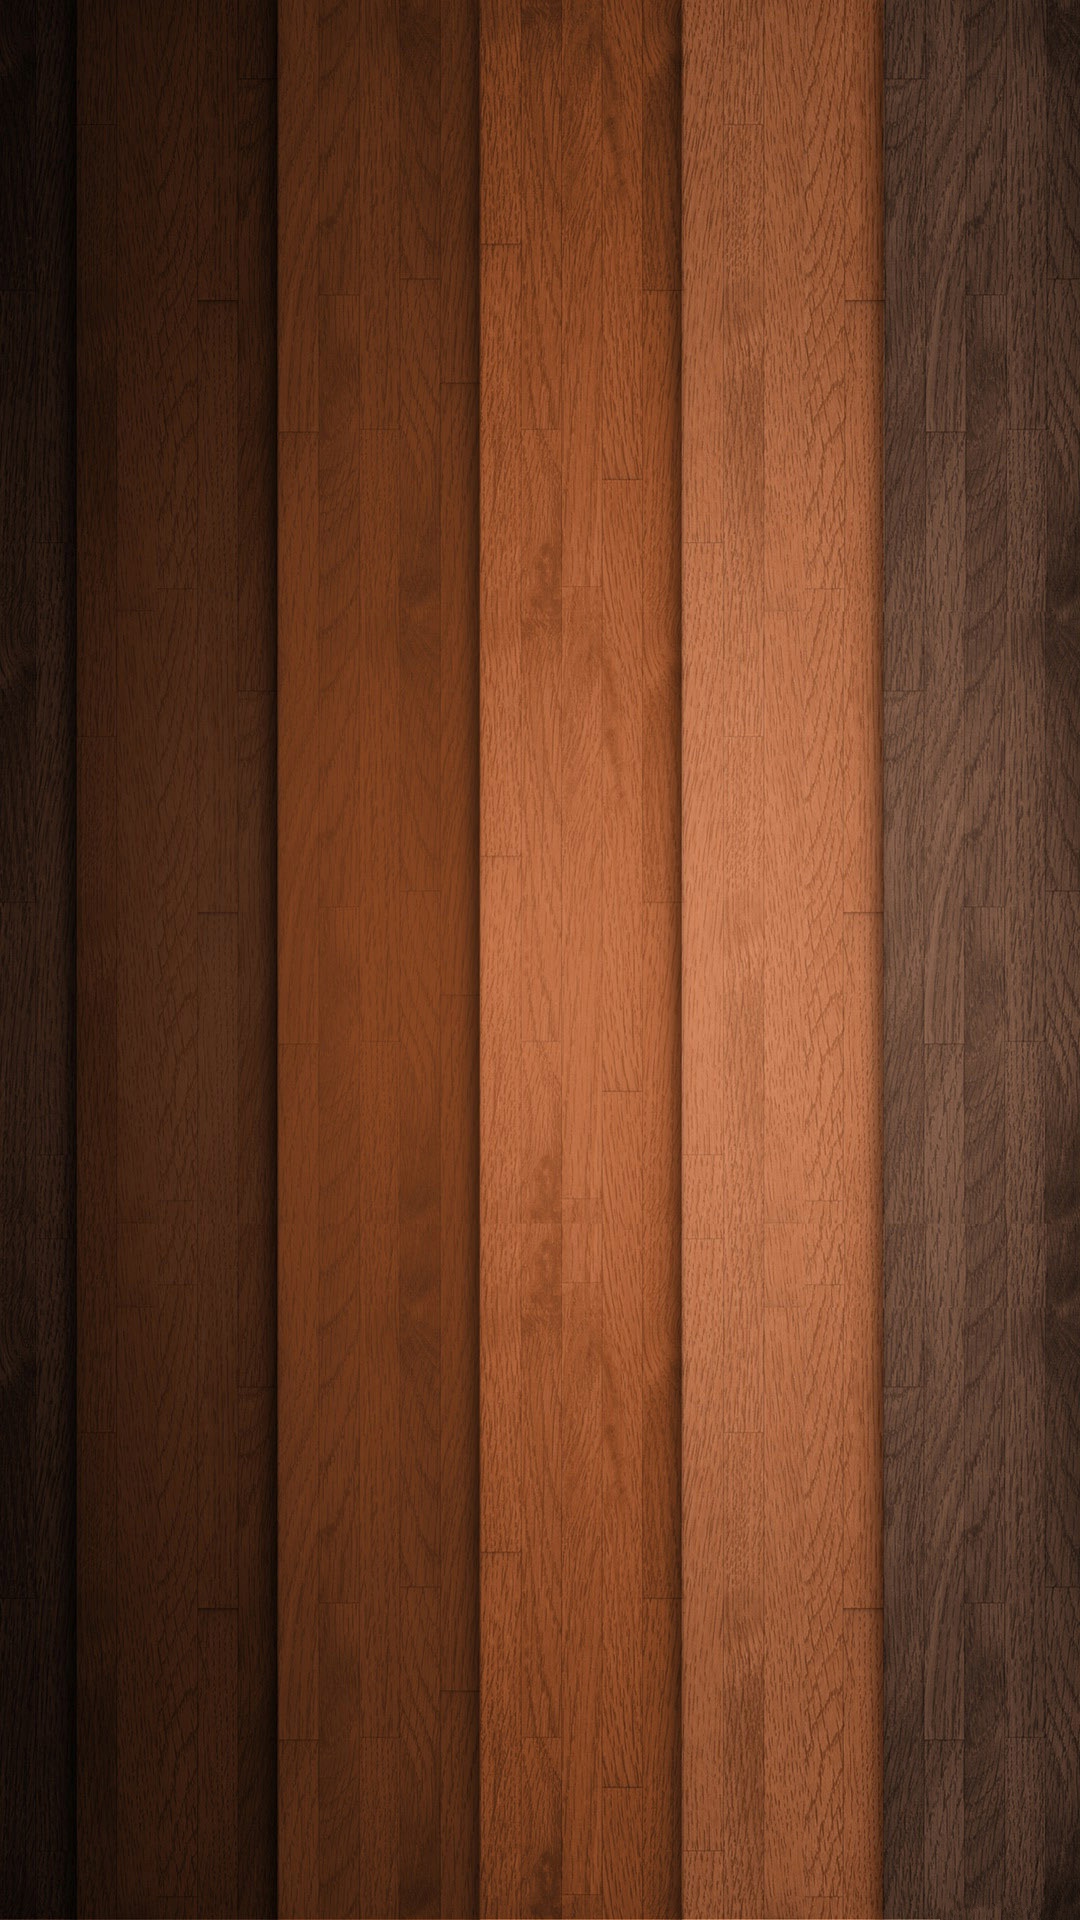 나무 패턴 벽지,나무,목재 얼룩,견목,갈색,합판